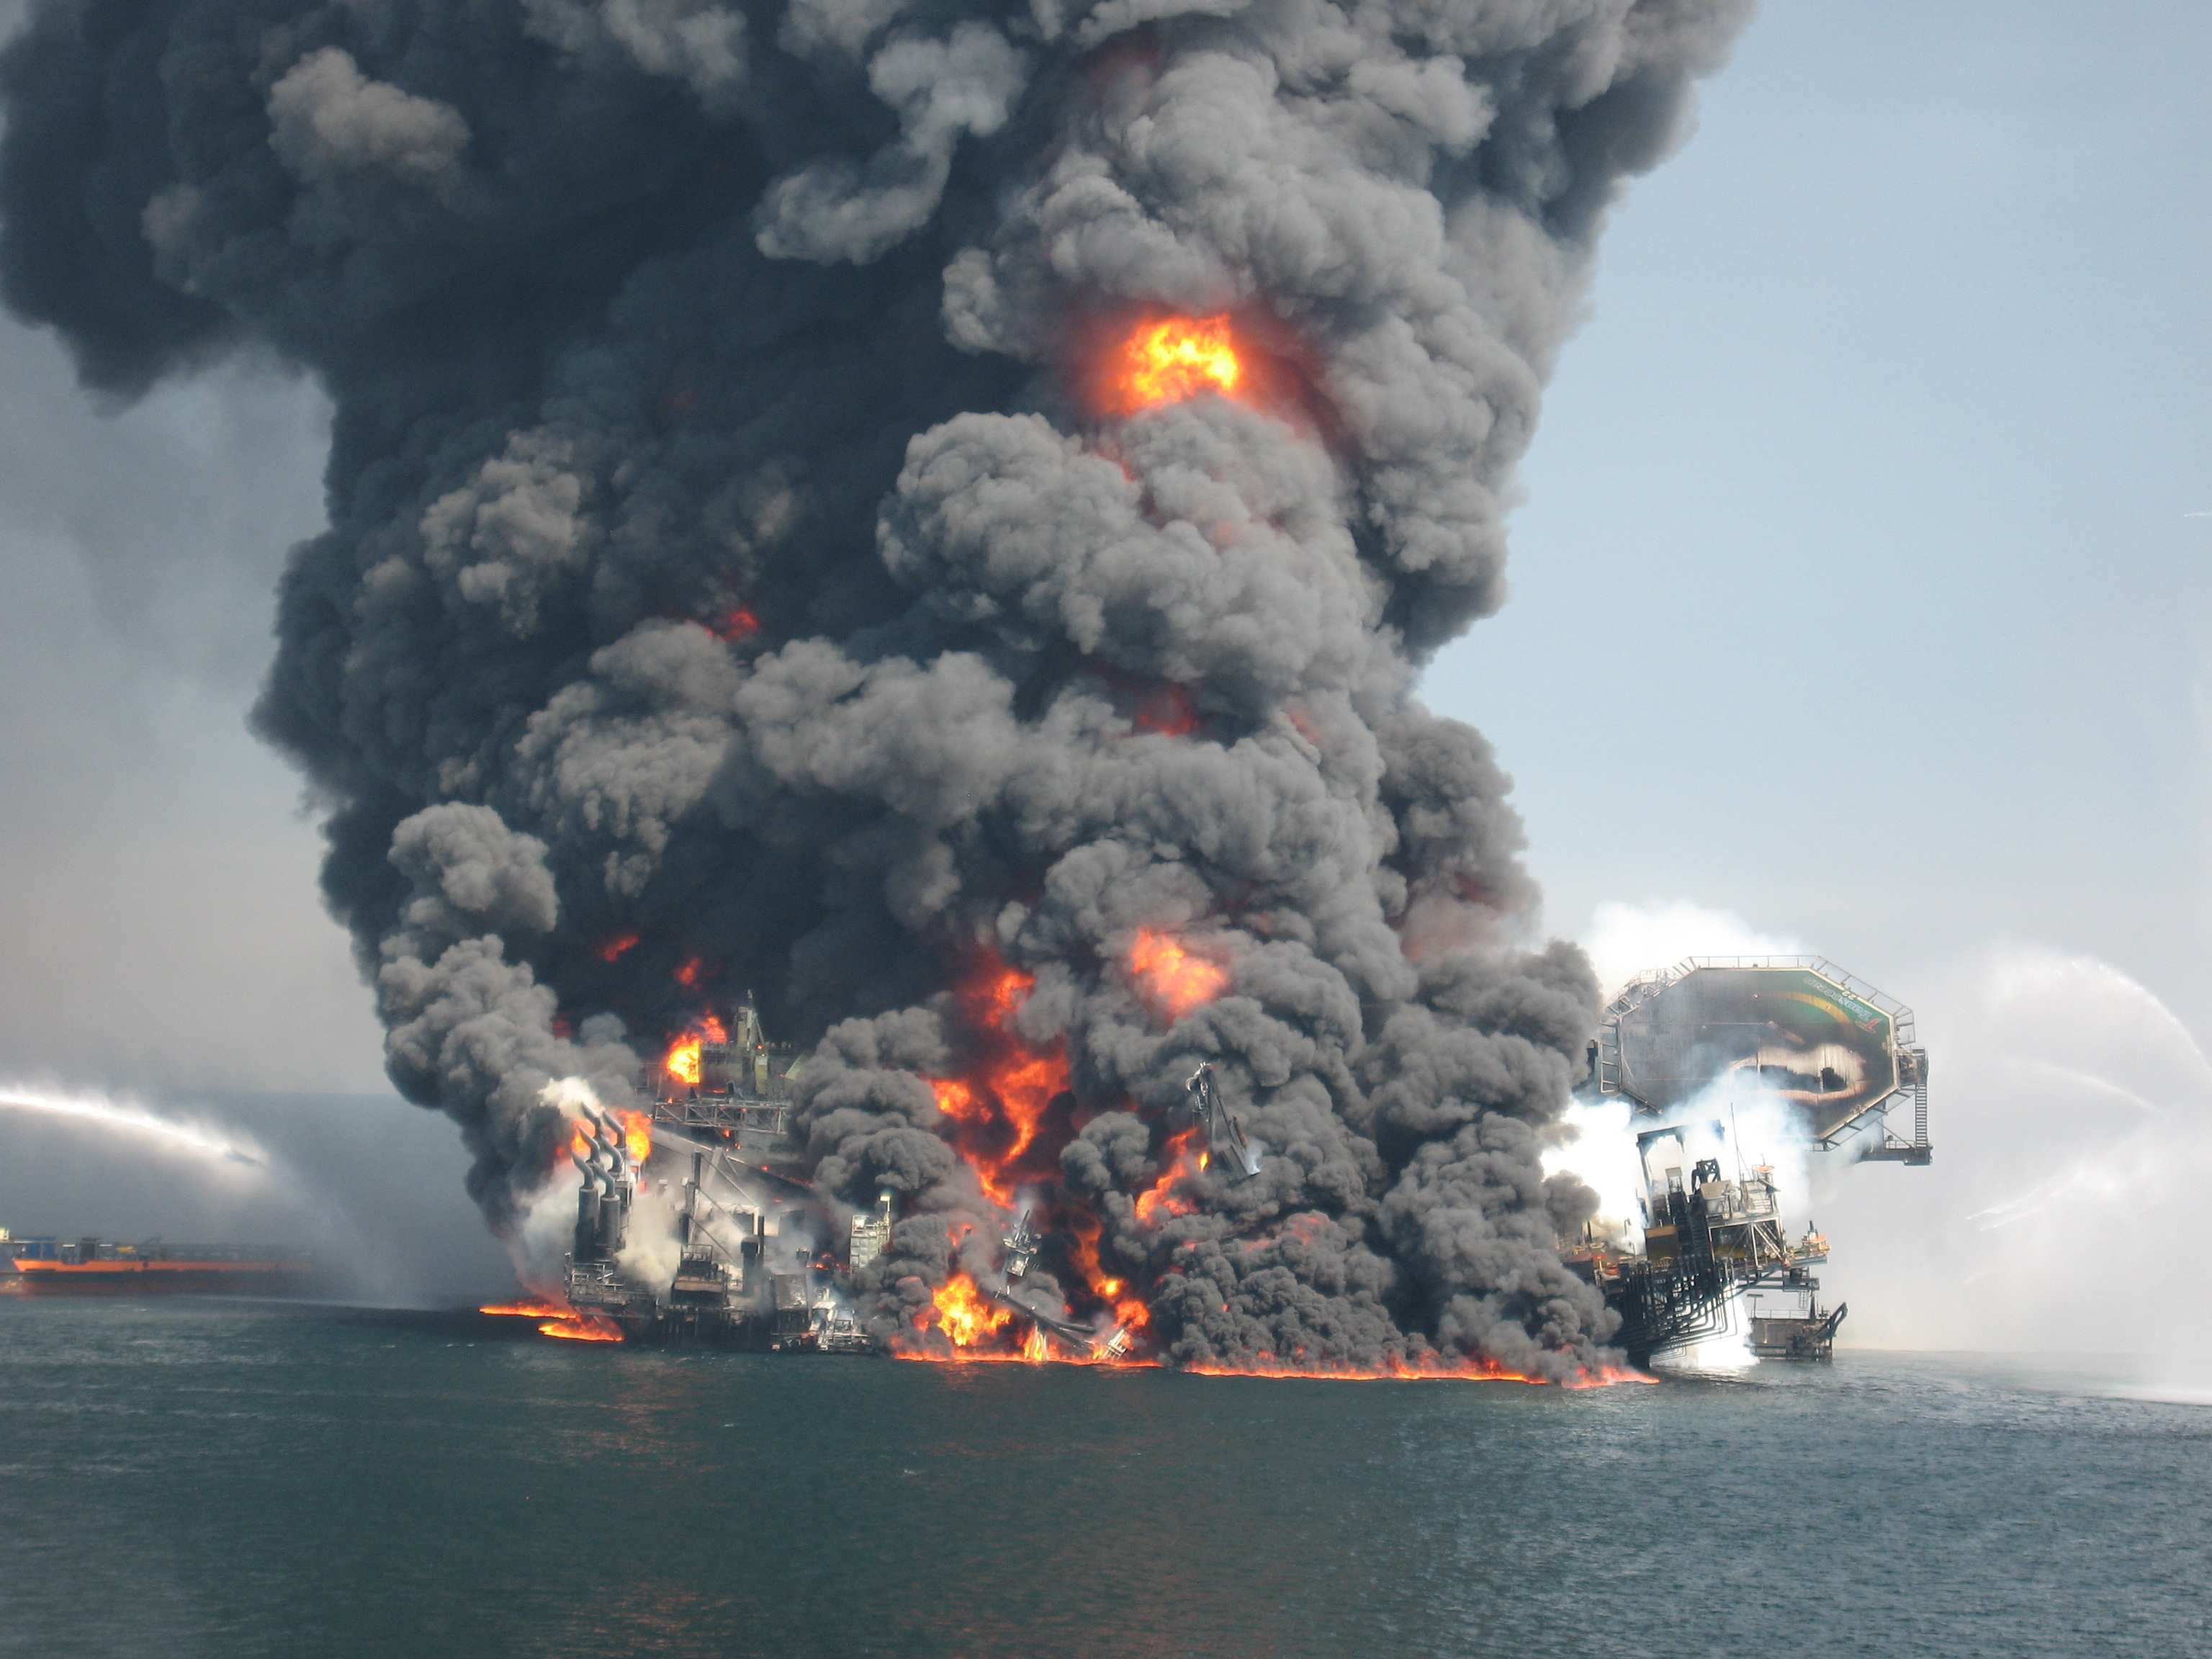 Взрыв буровых. Взрыв нефтяной платформы Deepwater Horizon. Взрыв нефтяной платформы Deepwater Horizon - 20 апреля 2010 года. Взрыв платформы Deepwater Horizon в мексиканском заливе. Авария на платформе Deepwater Horizon 20 апреля 2010 года.